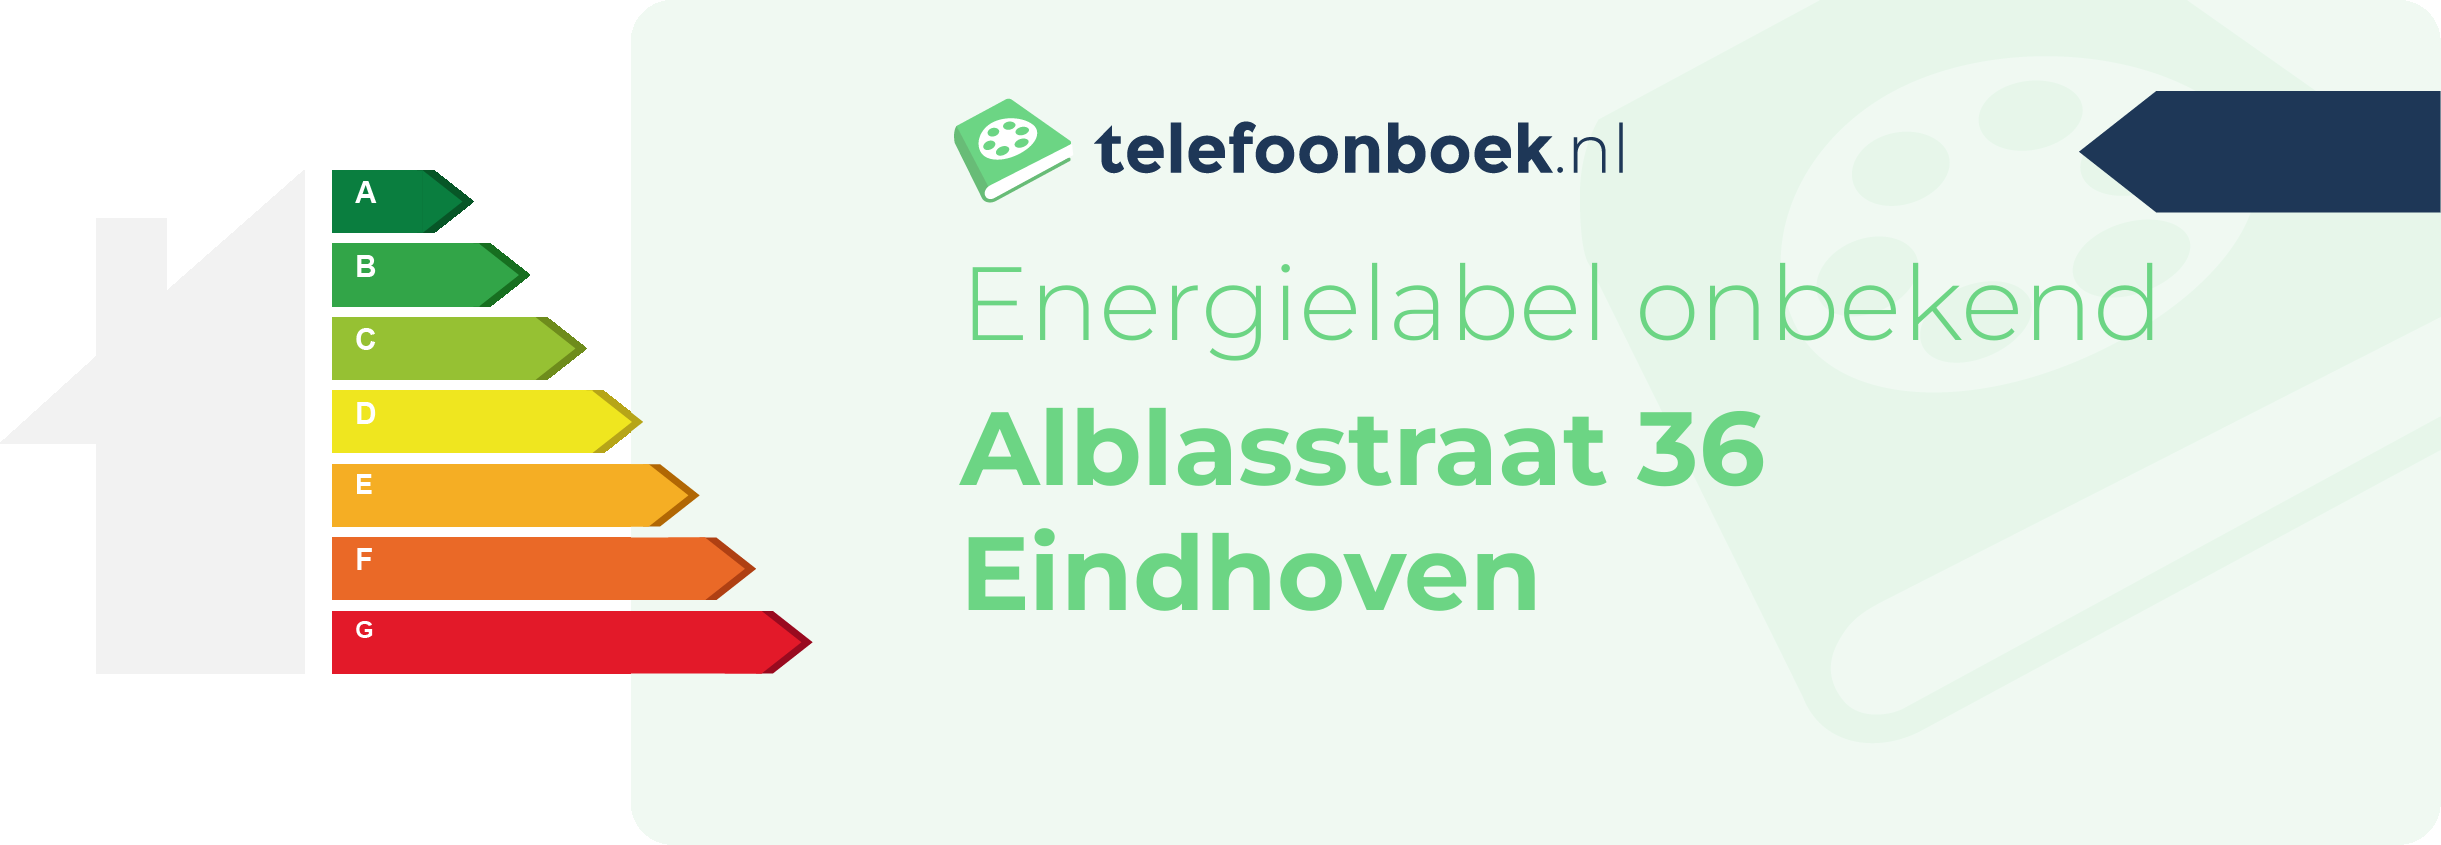 Energielabel Alblasstraat 36 Eindhoven